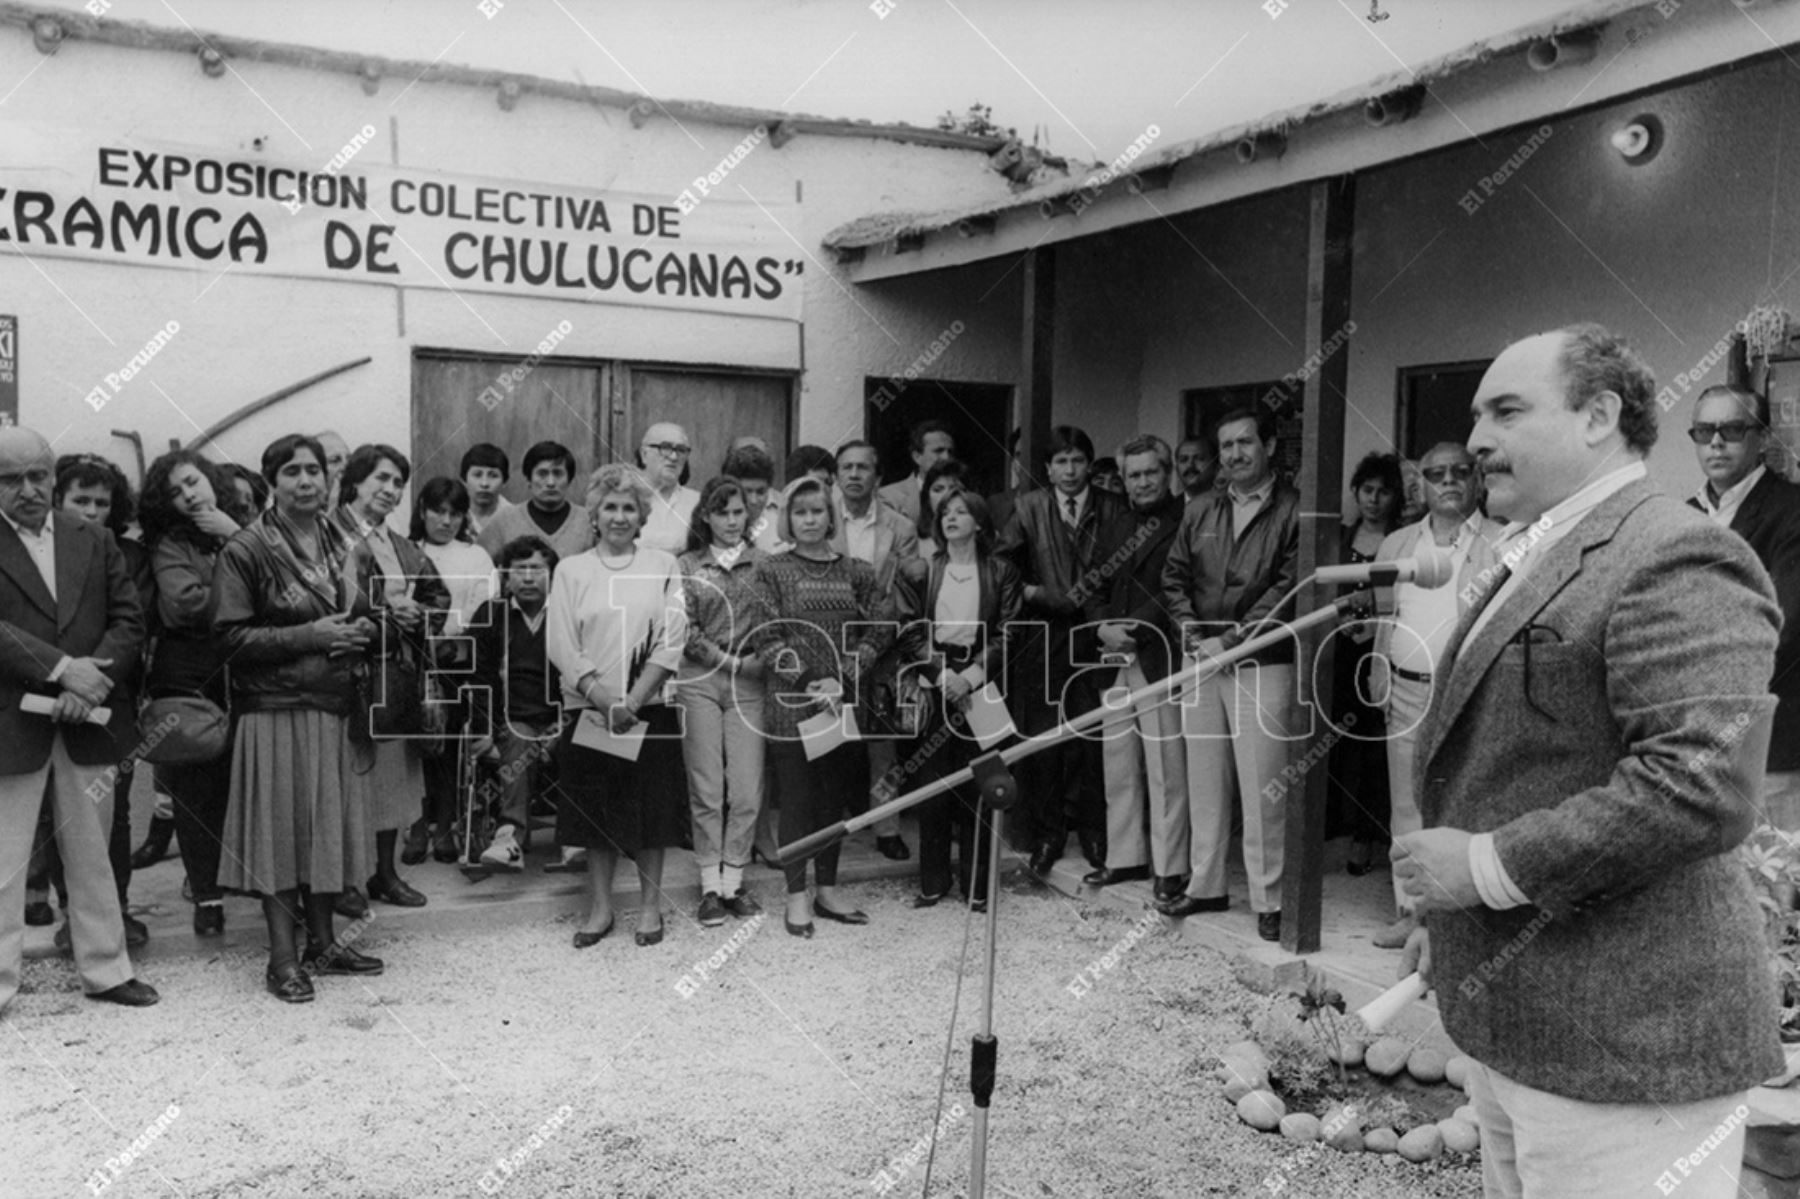 Lima - 3 setiembre 1991 / El alcalde de Miraflores, Alberto Andrade Carmona, inaugura exposición colectiva "Cerámica de Chulucanas". Foto: Archivo Histórico de El Peruano